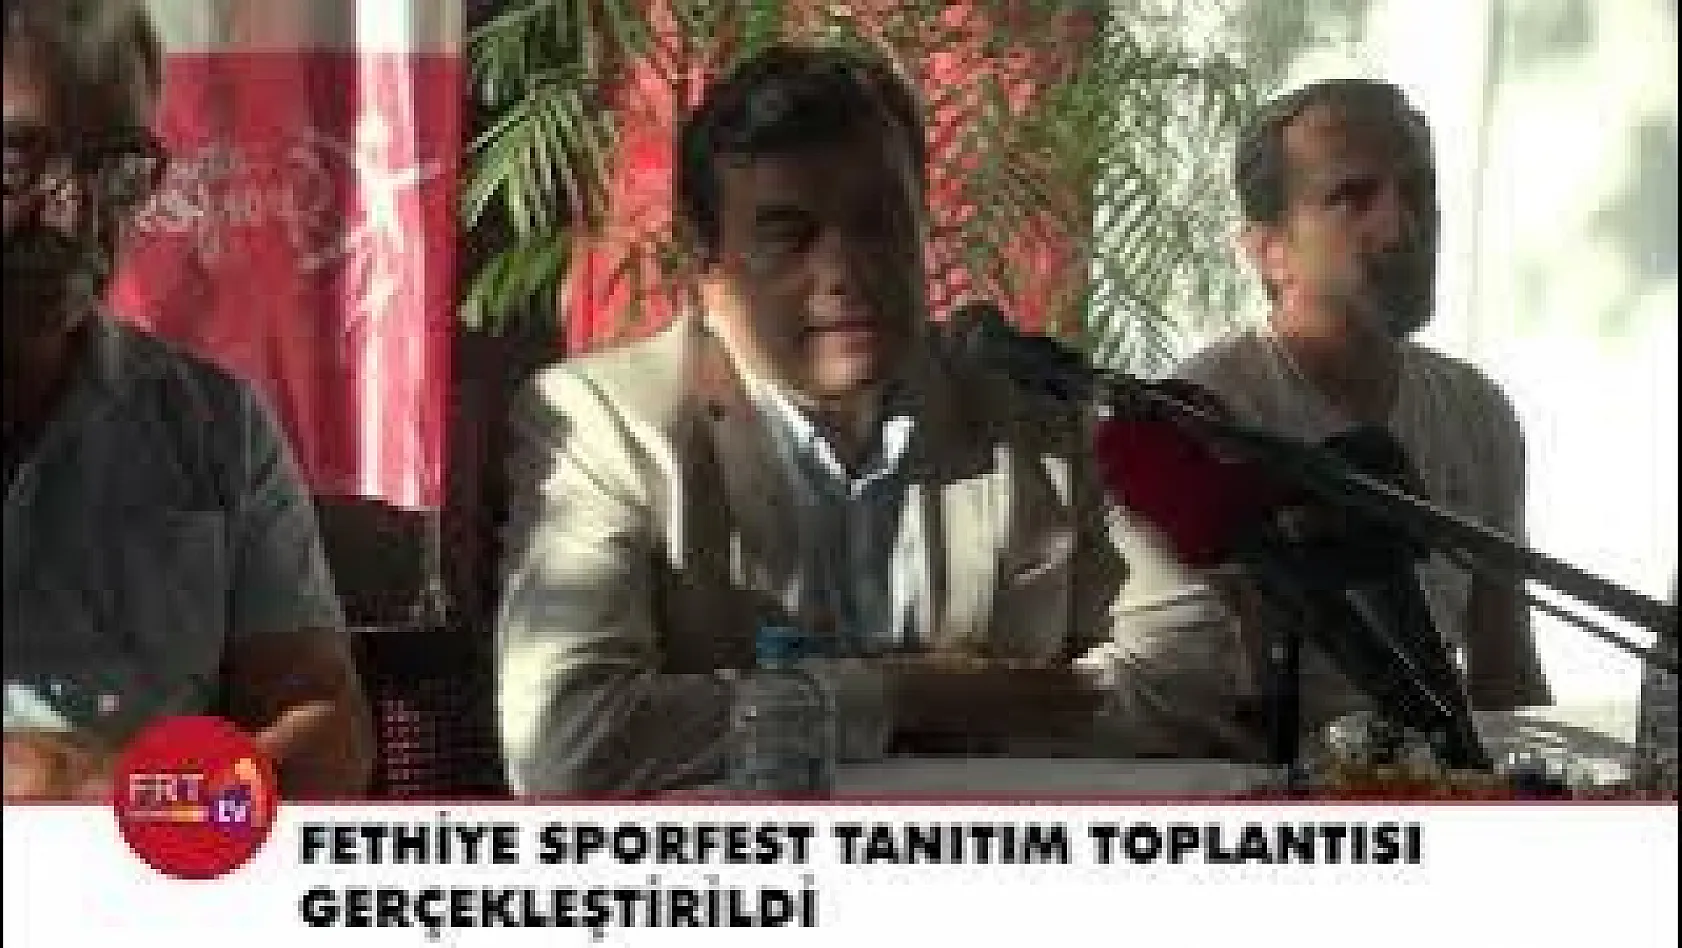 Fethiye Sporfest Tanıtım toplantısı gerçekleştirildi